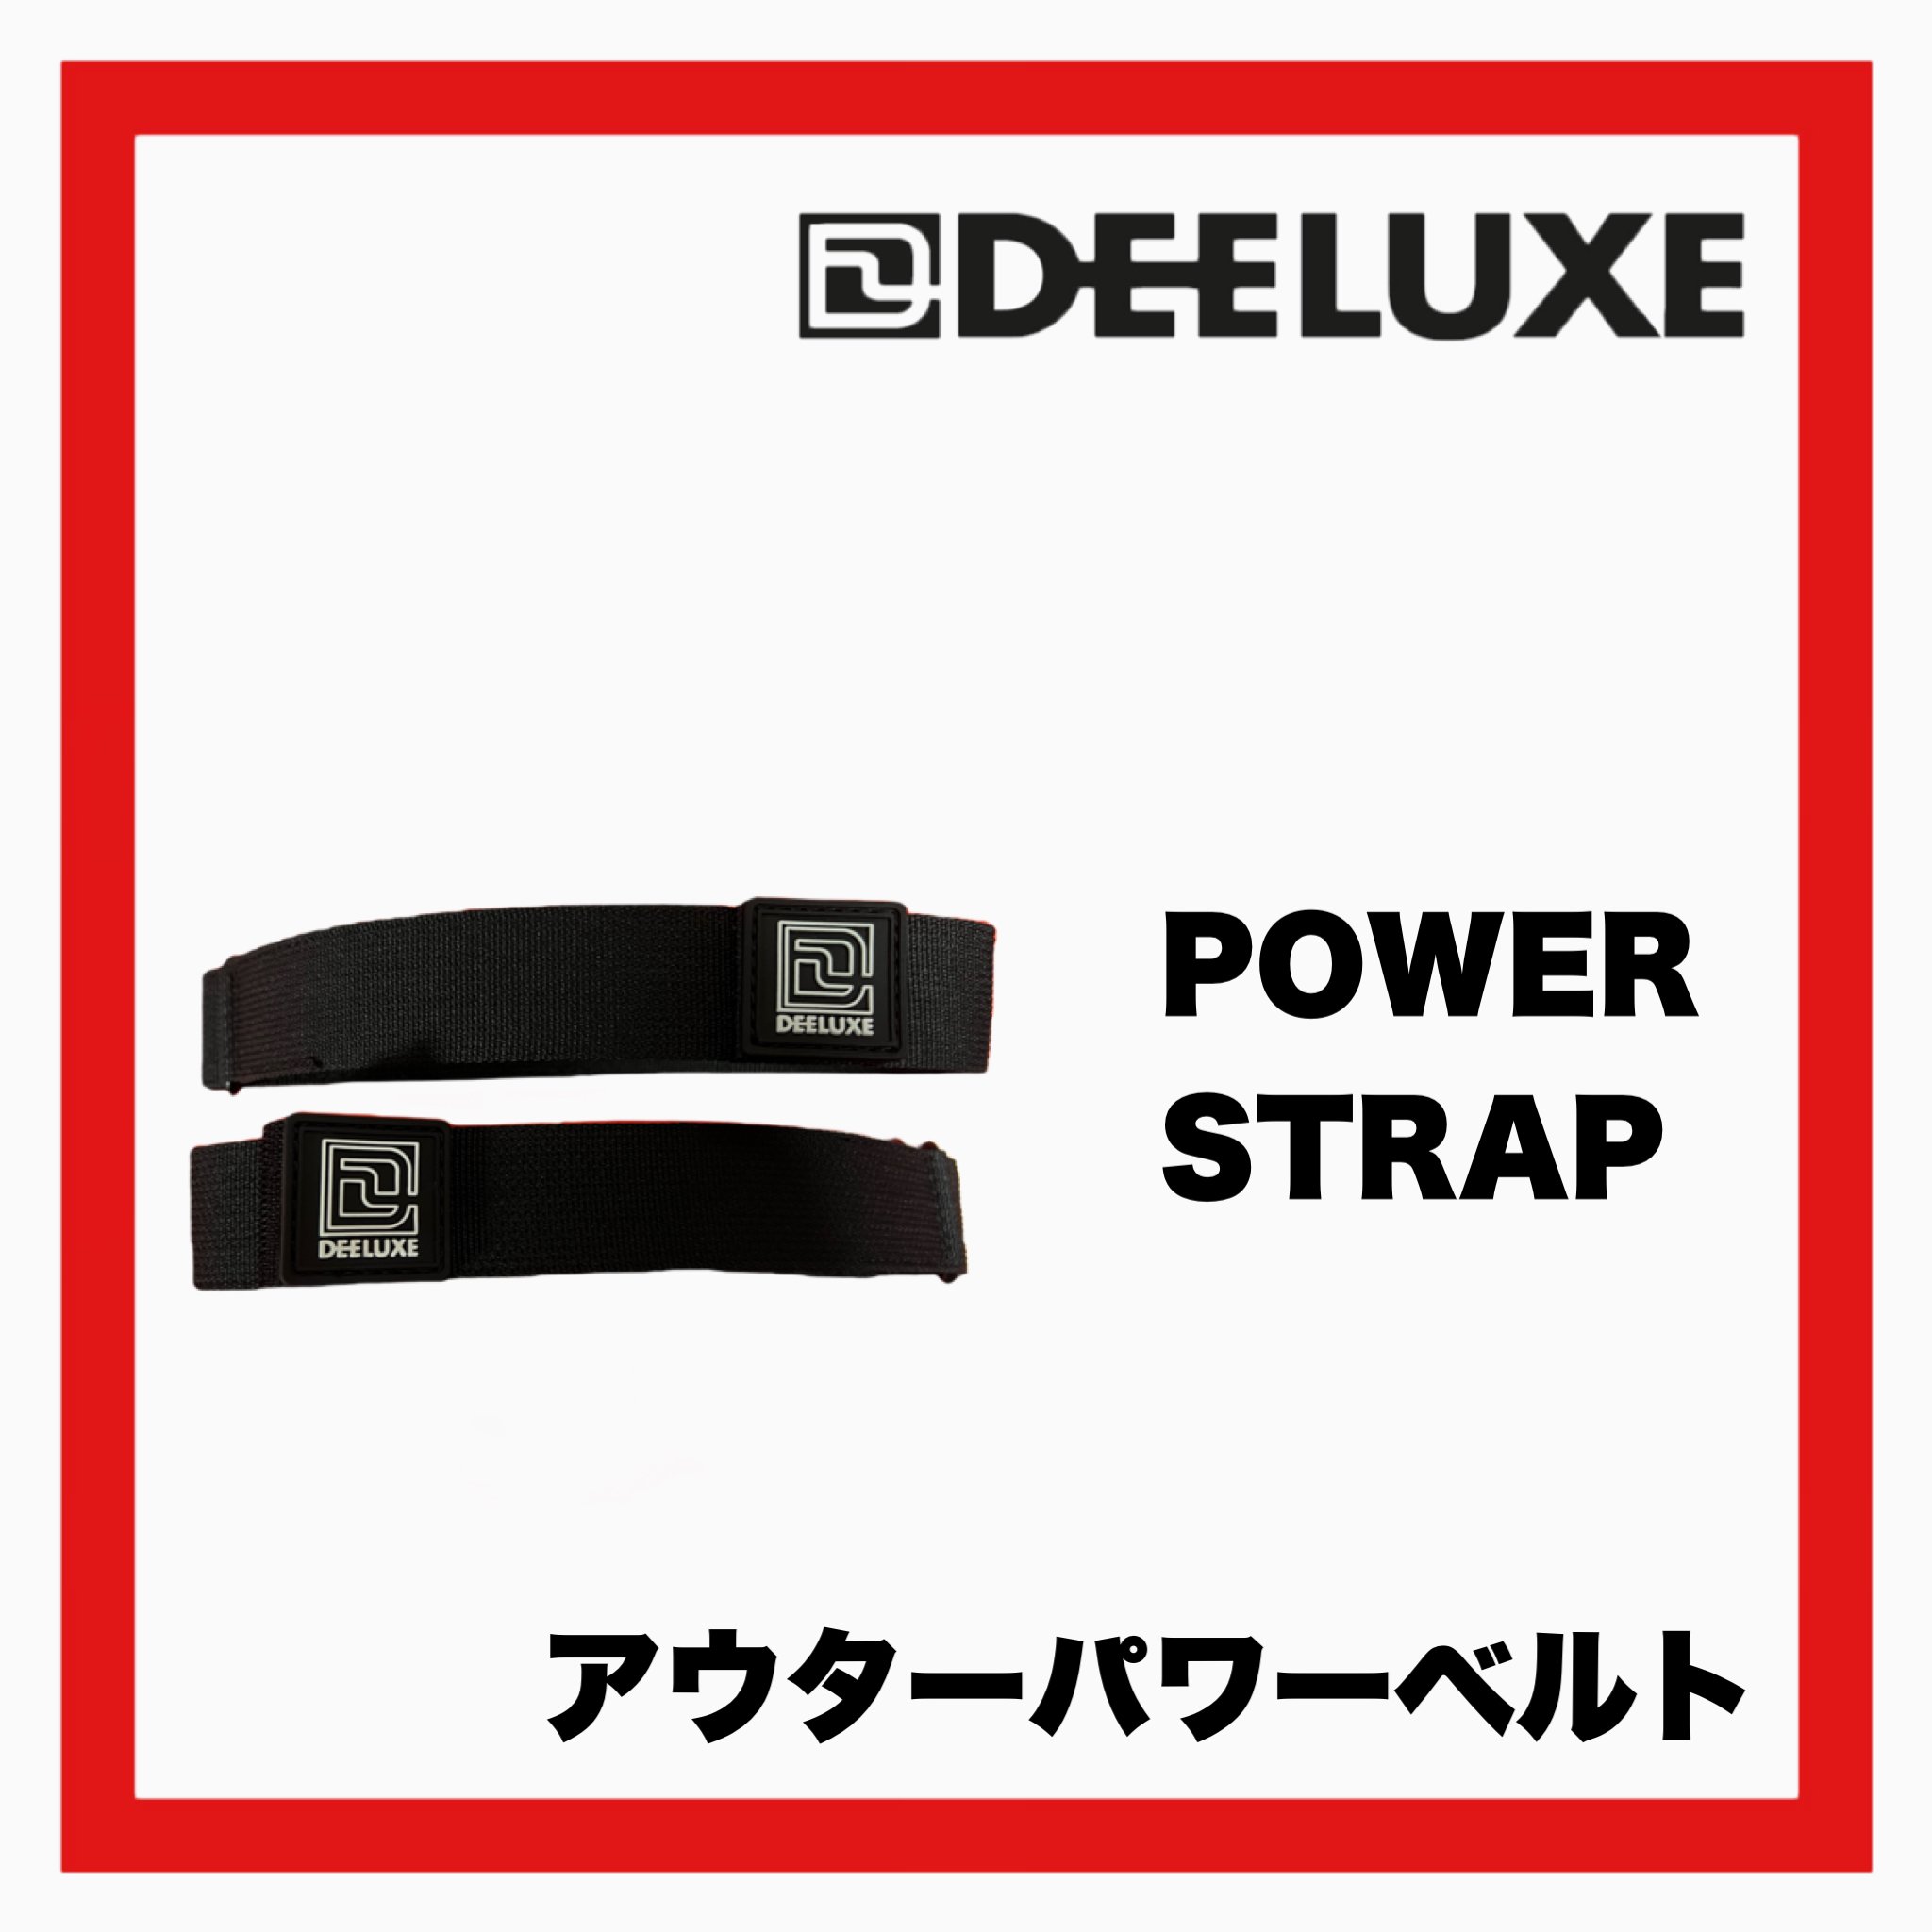 DEELUXE-POWER STRAP パワーストラップ